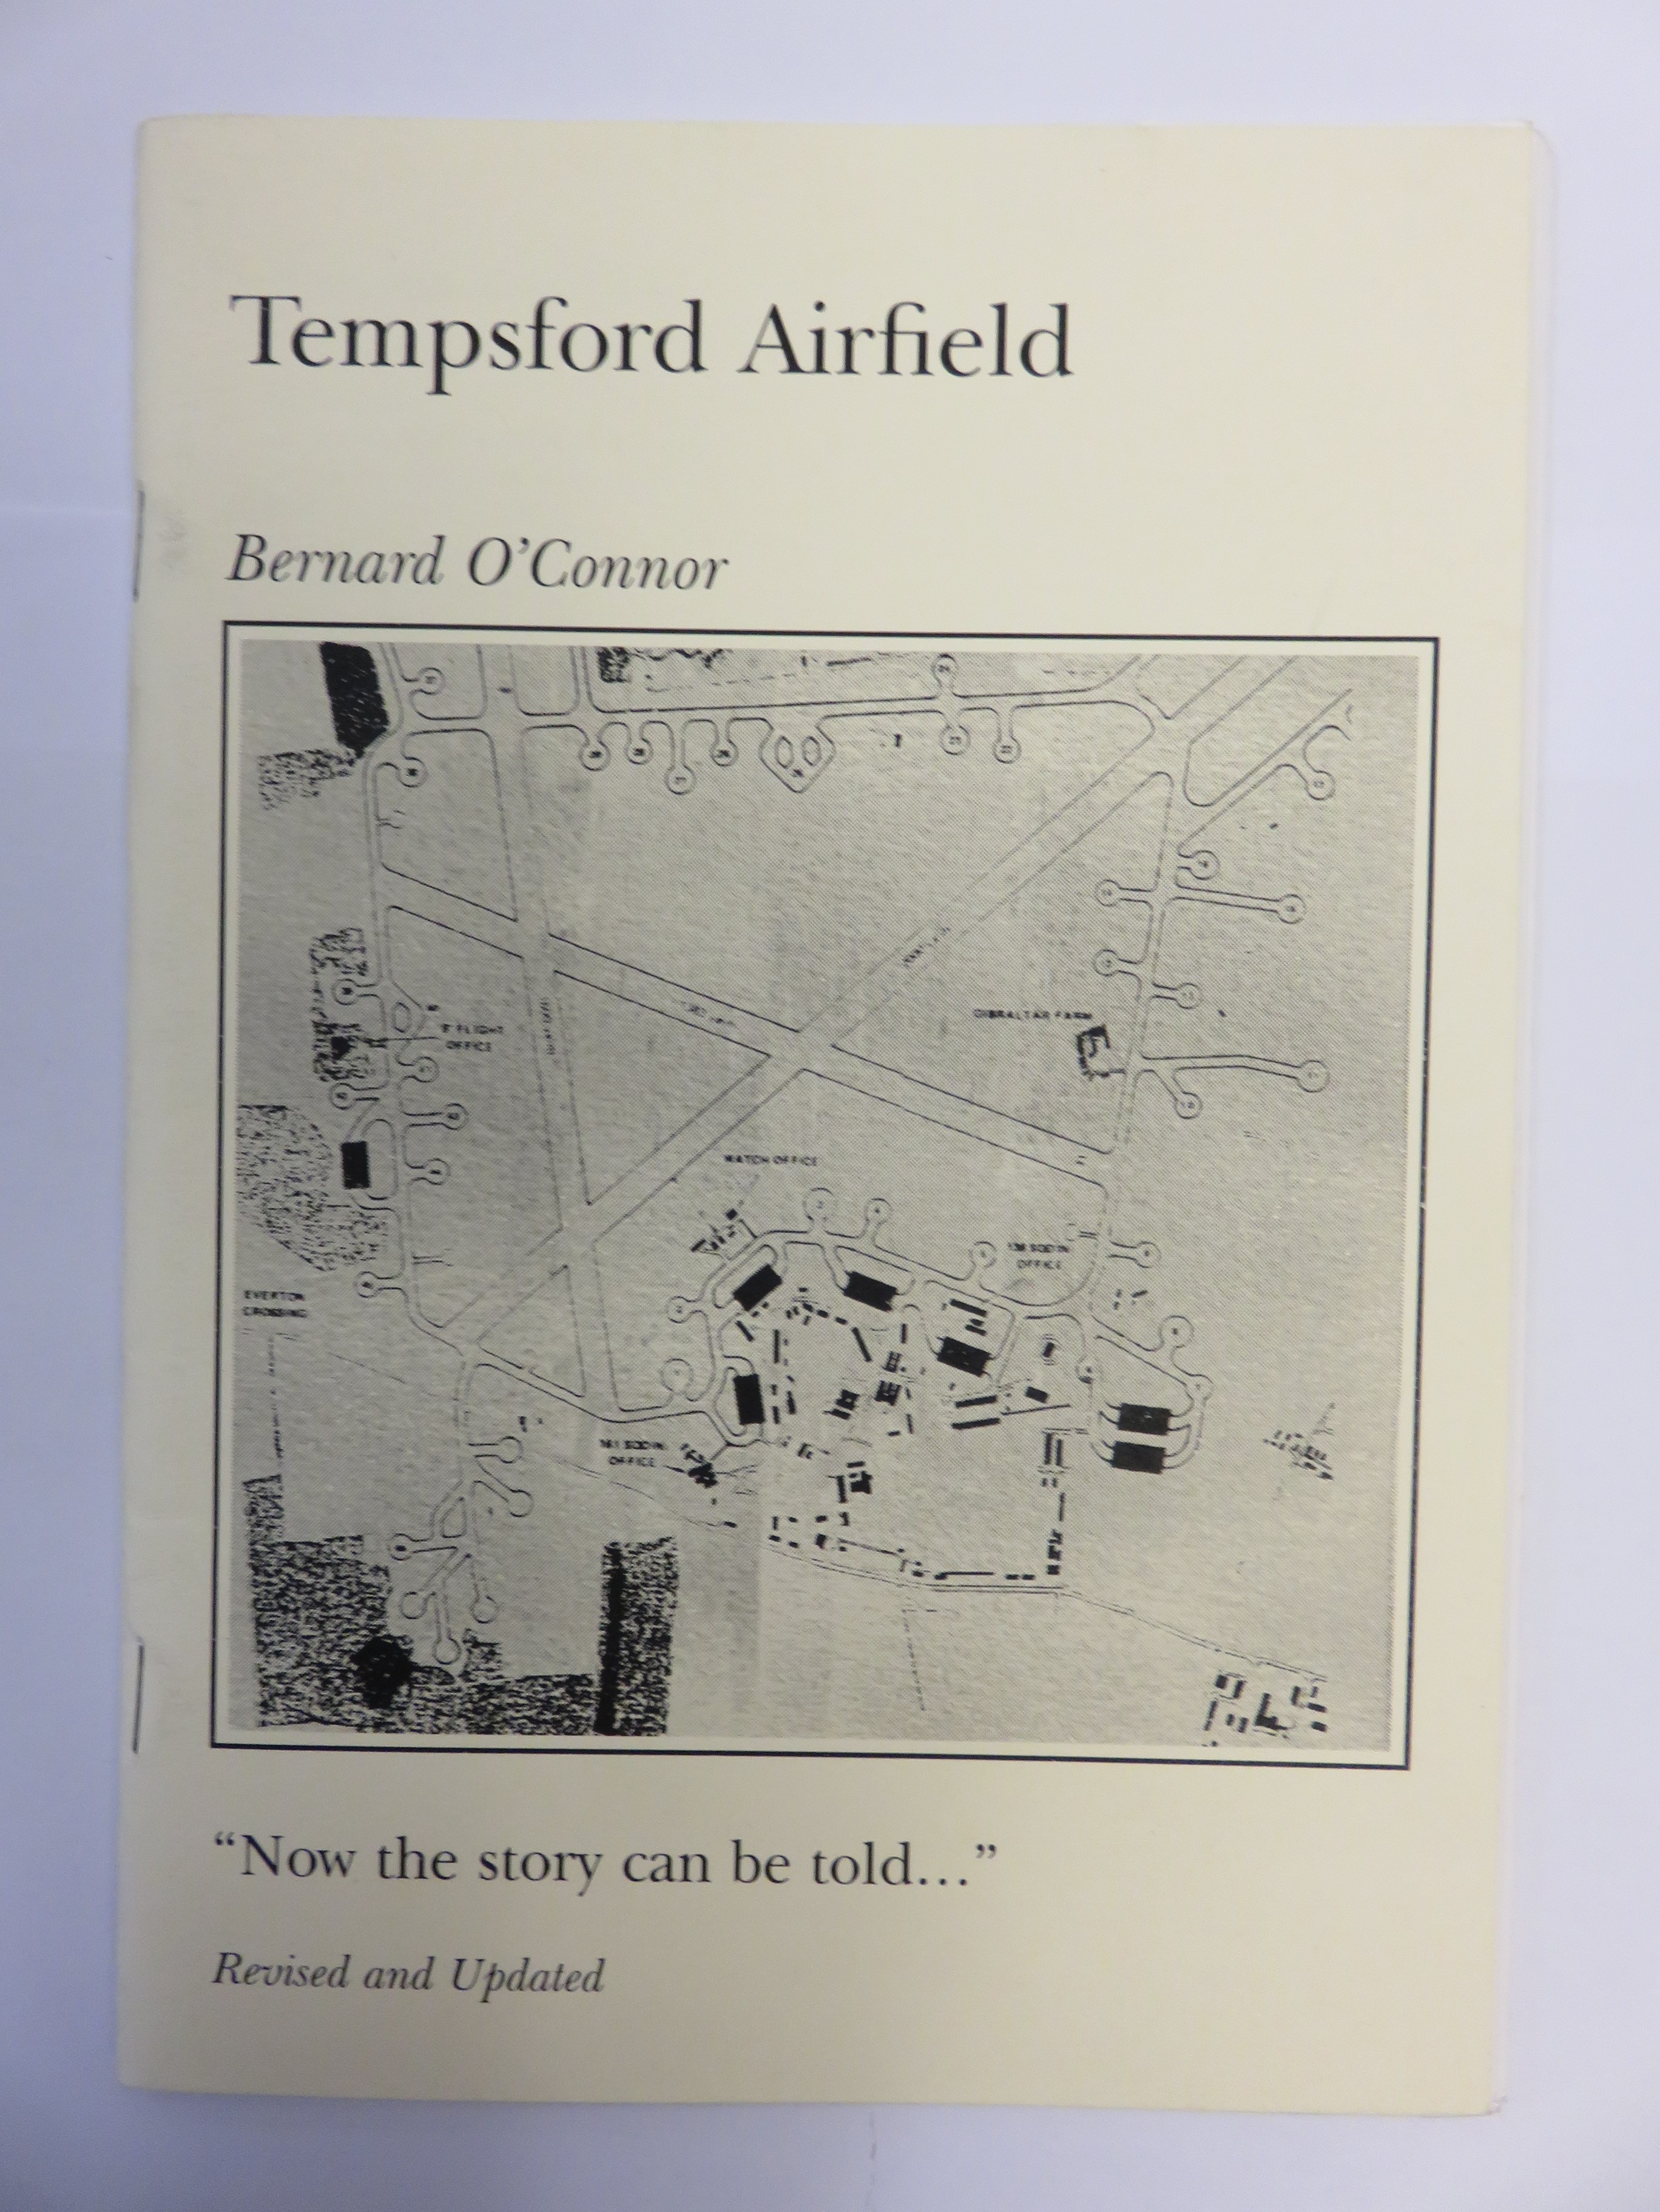 Tempsford Airfield